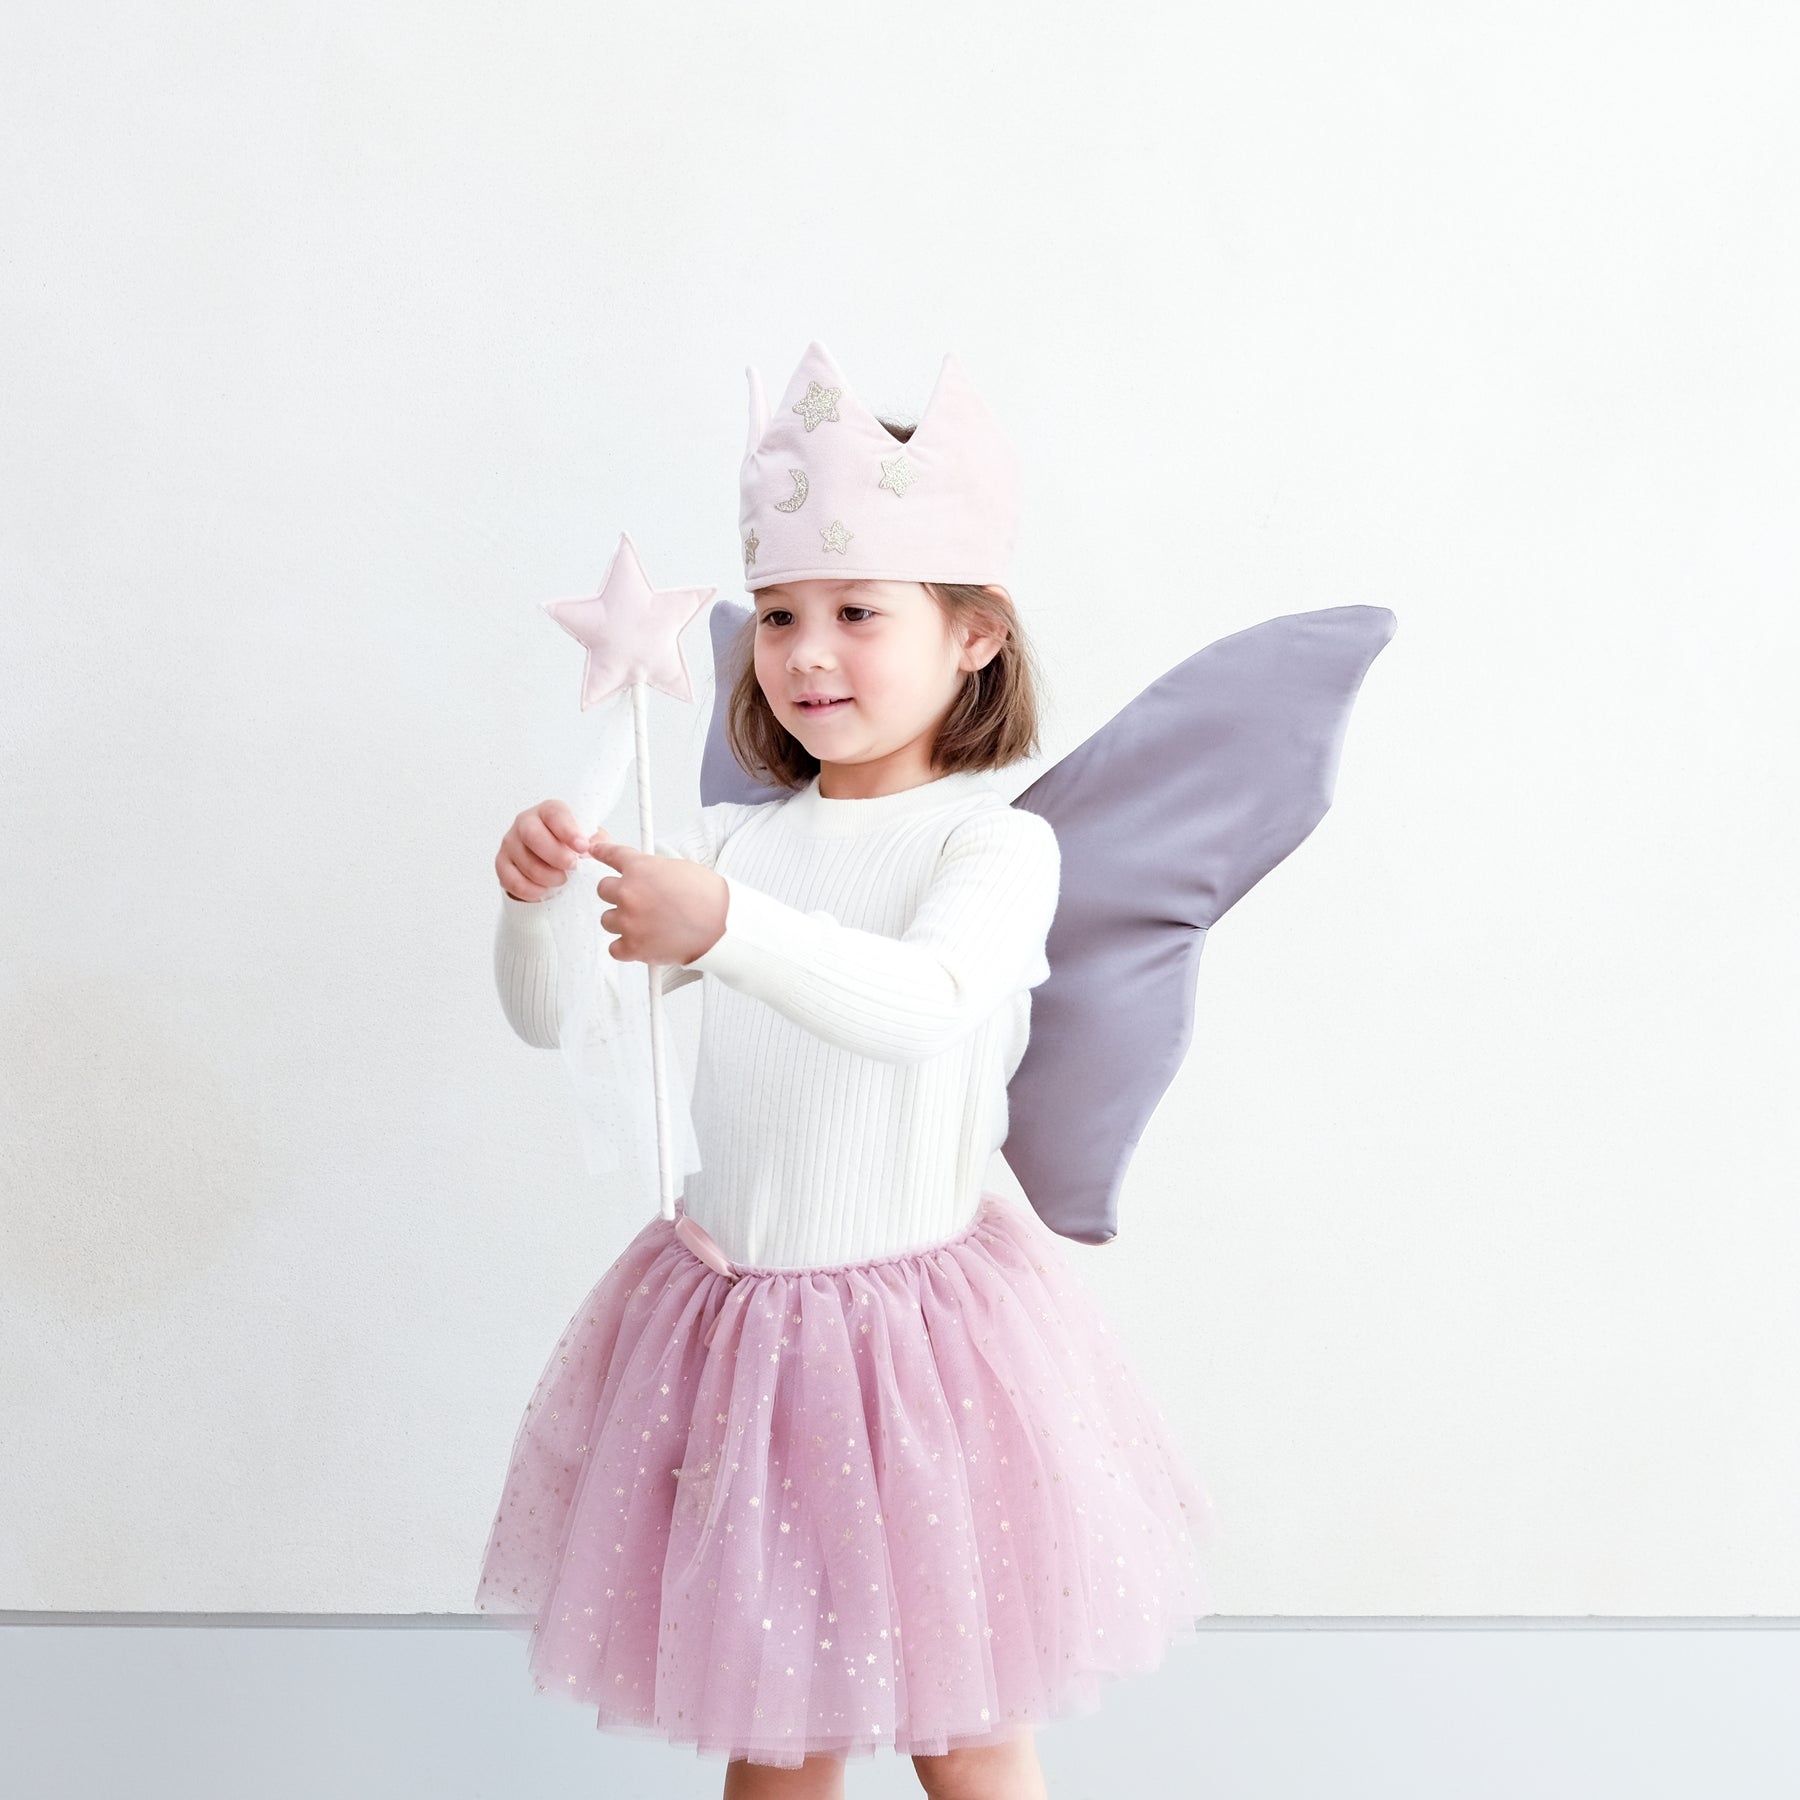 Black velvet magic wand - Fairy costume